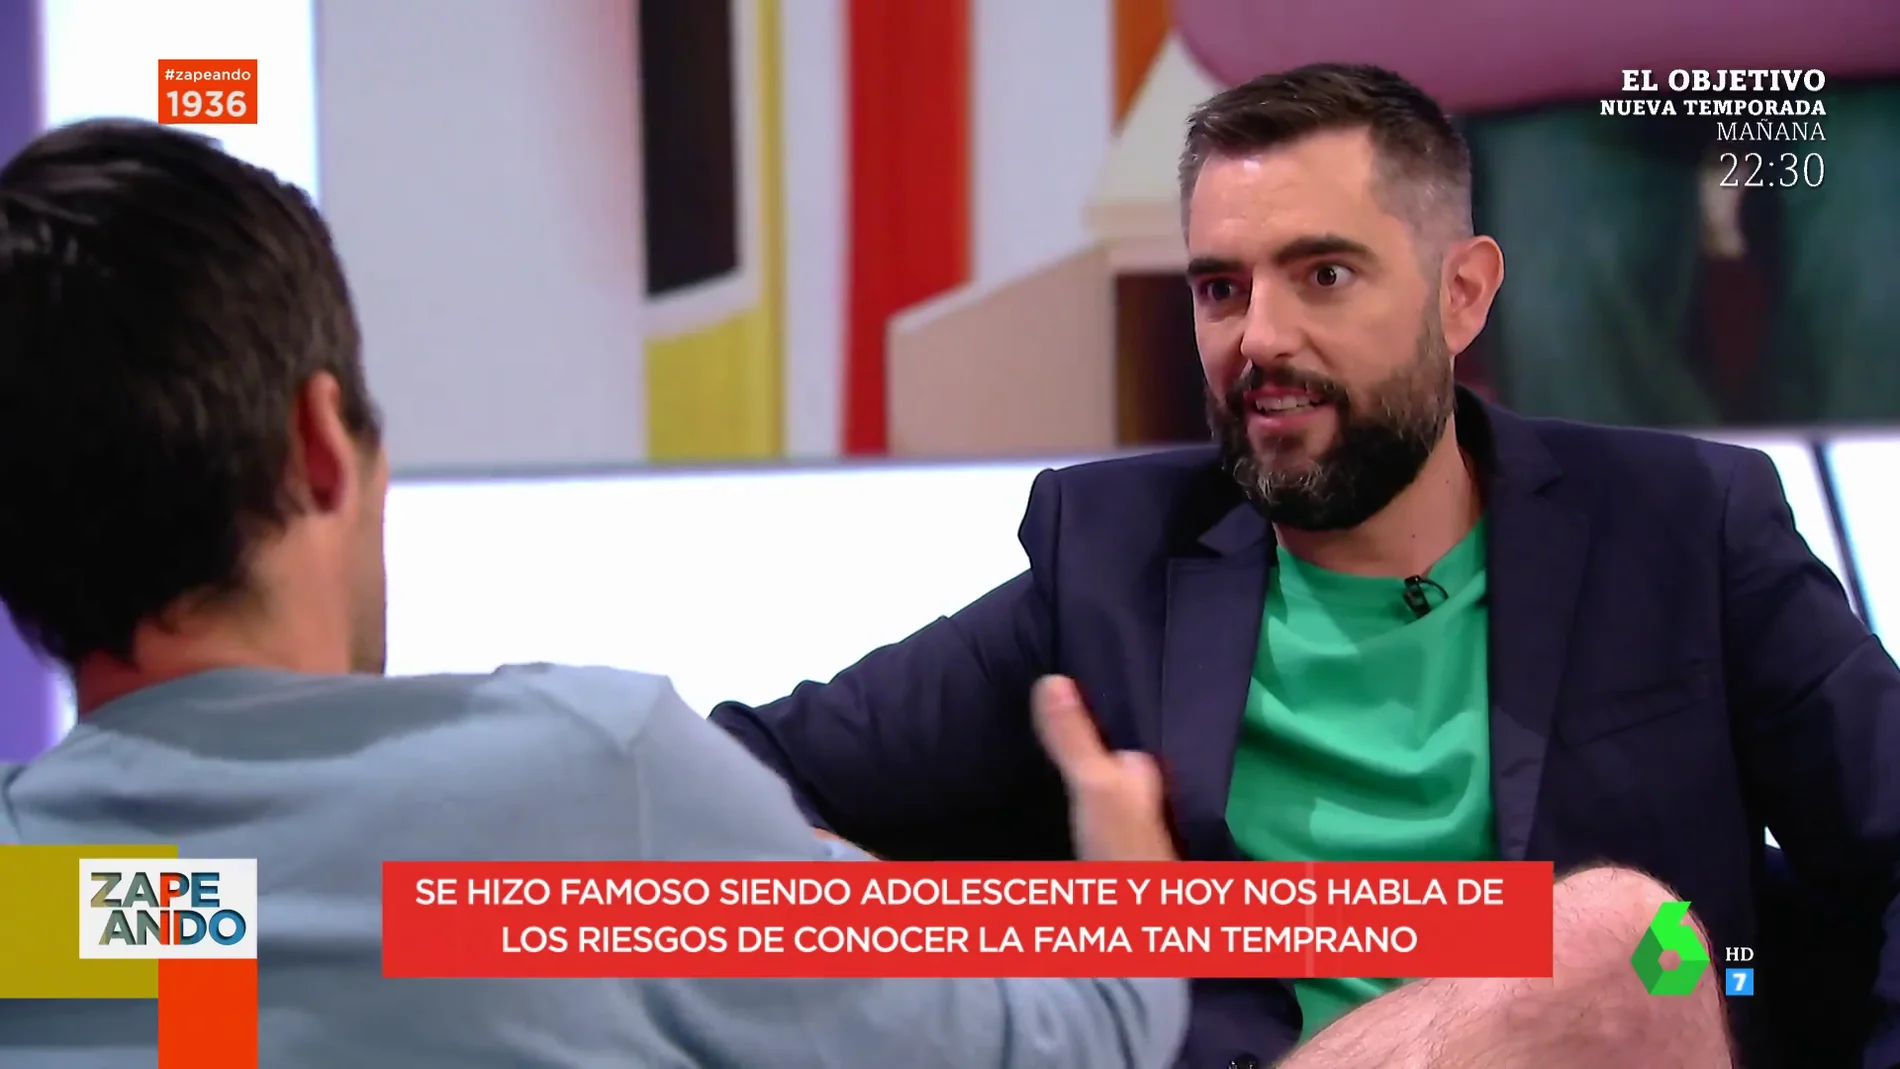 Jordi Cruz pone en apuros a Dani Mateo en directo: "No toques ese tema, hostia lo pasé muy mal"